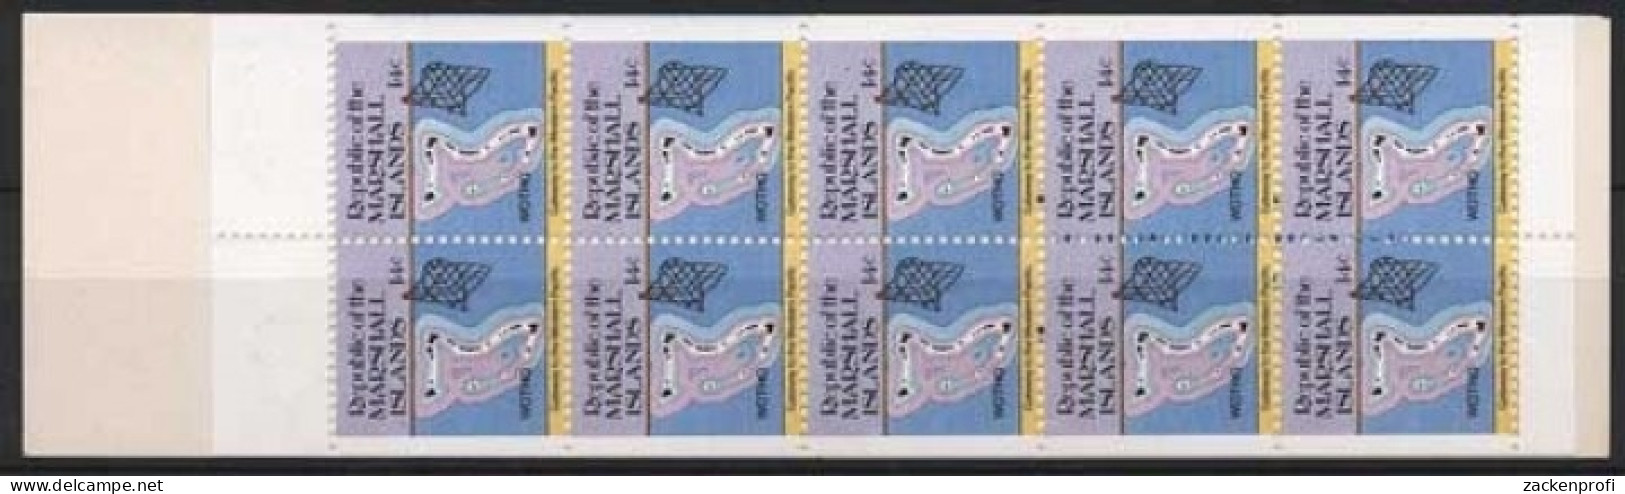 Marshall-Inseln 1985 Freimarken: Inselkarten 40 MH Postfrisch (C21495) - Marshall